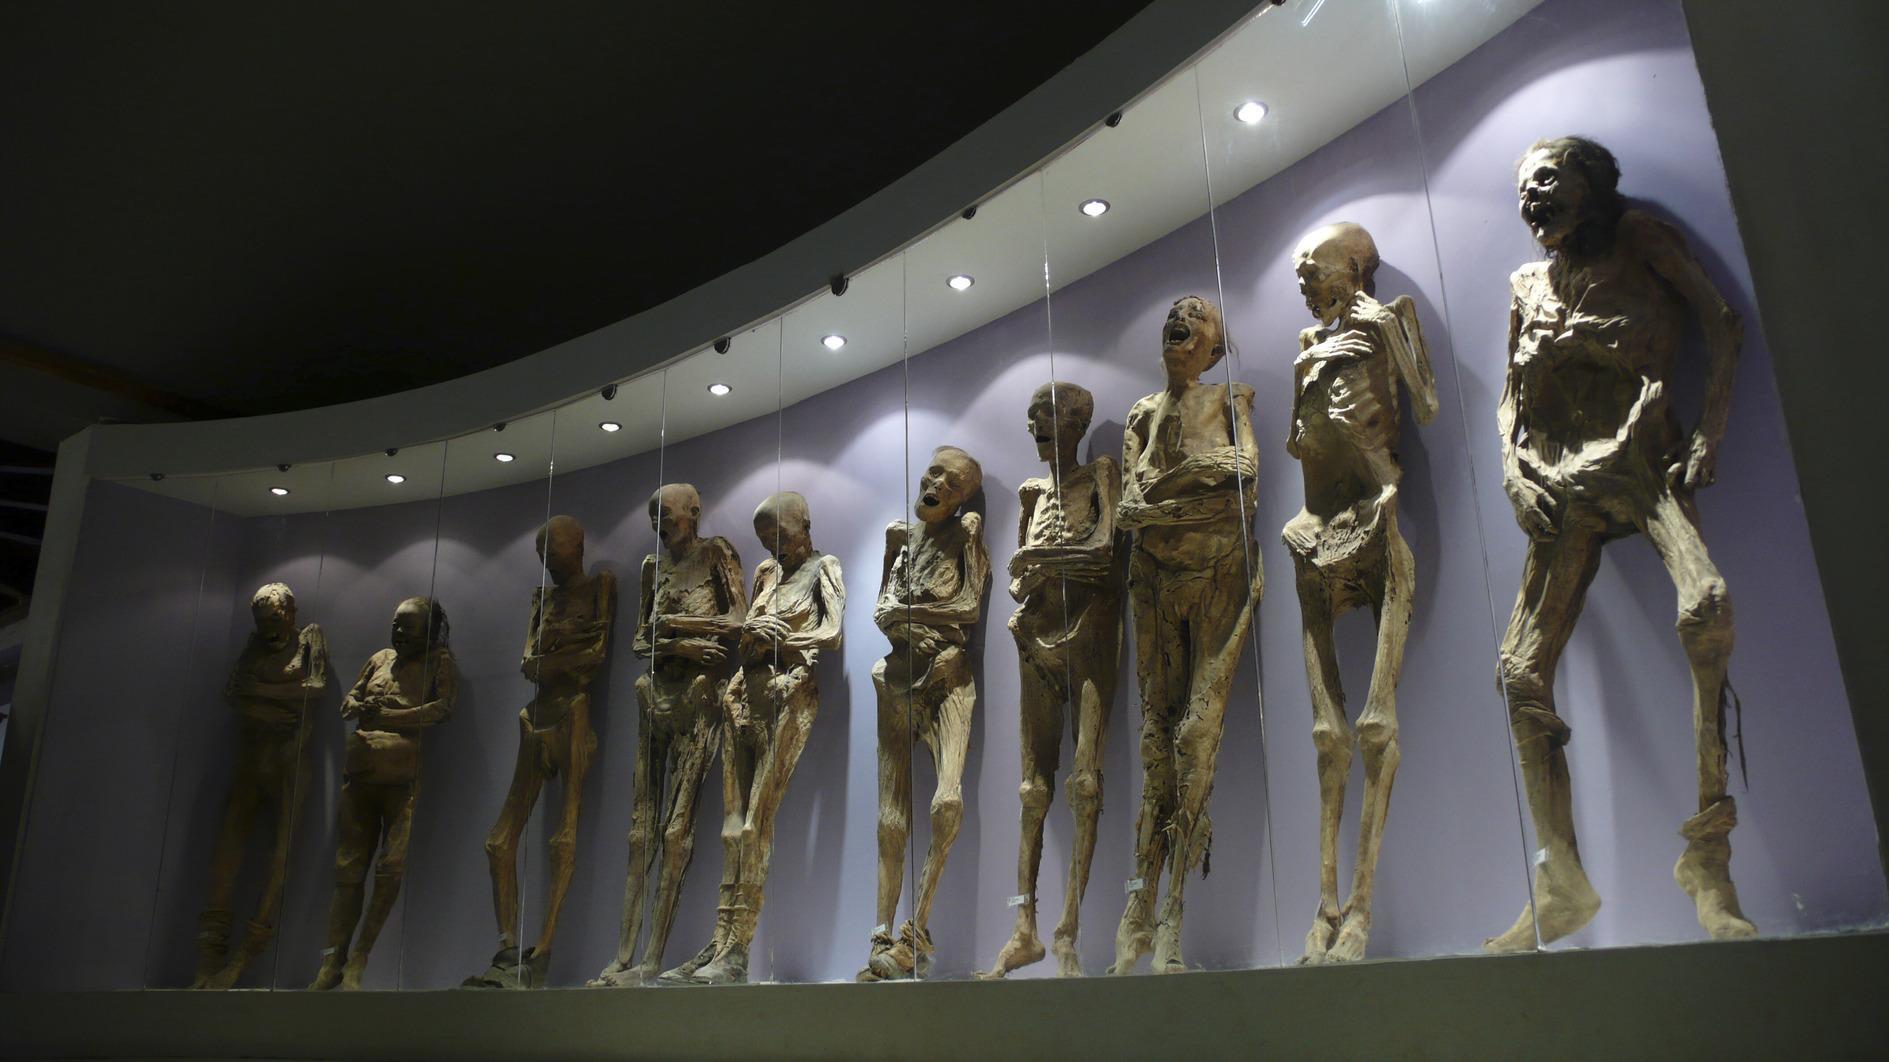 19e-eeuwse mummie verkeerd behandeld door museumpersoneel